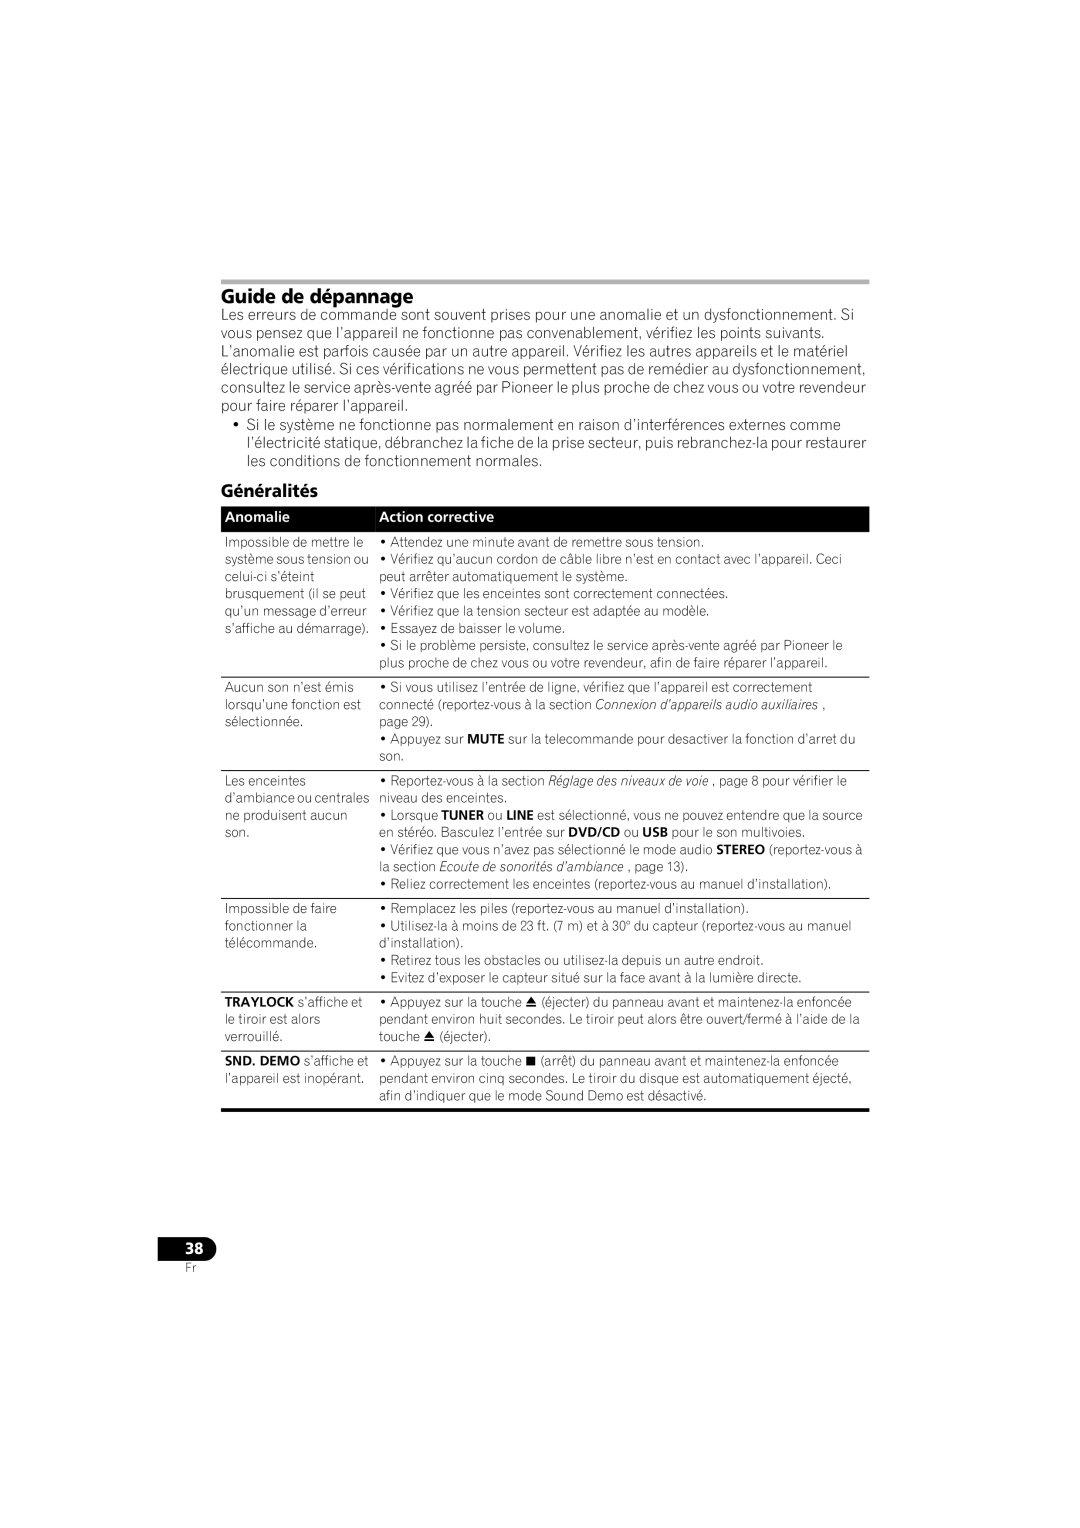 Pioneer HTZ-360DV manual Guide de dépannage, Généralités, Anomalie, Action corrective 